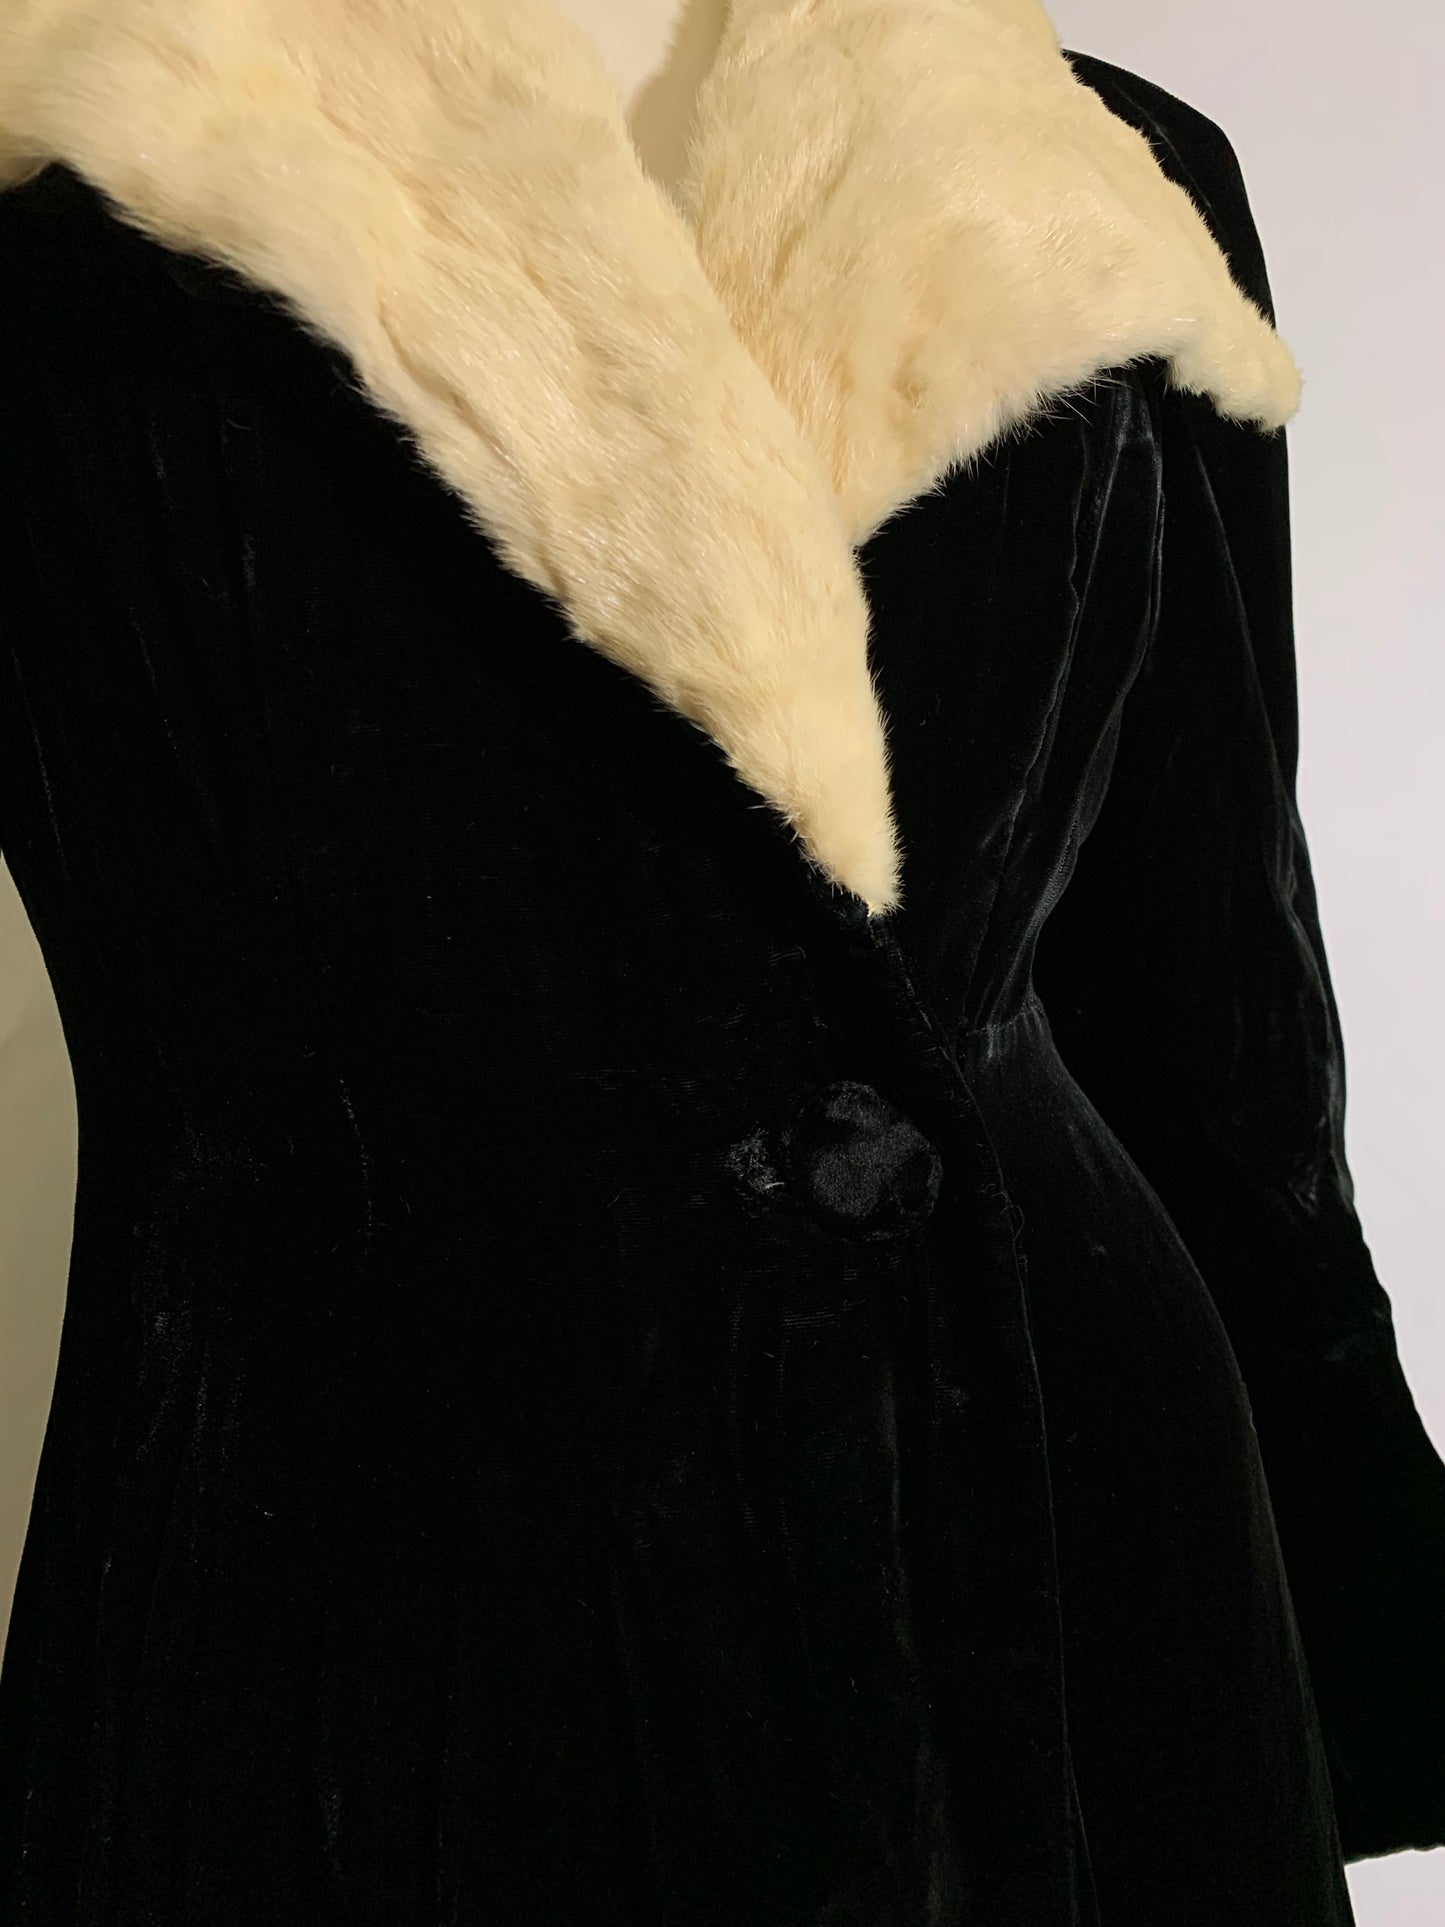 Iconic Black Velvet Princess Line Opera Coat with Ermine Collar circa 1930s